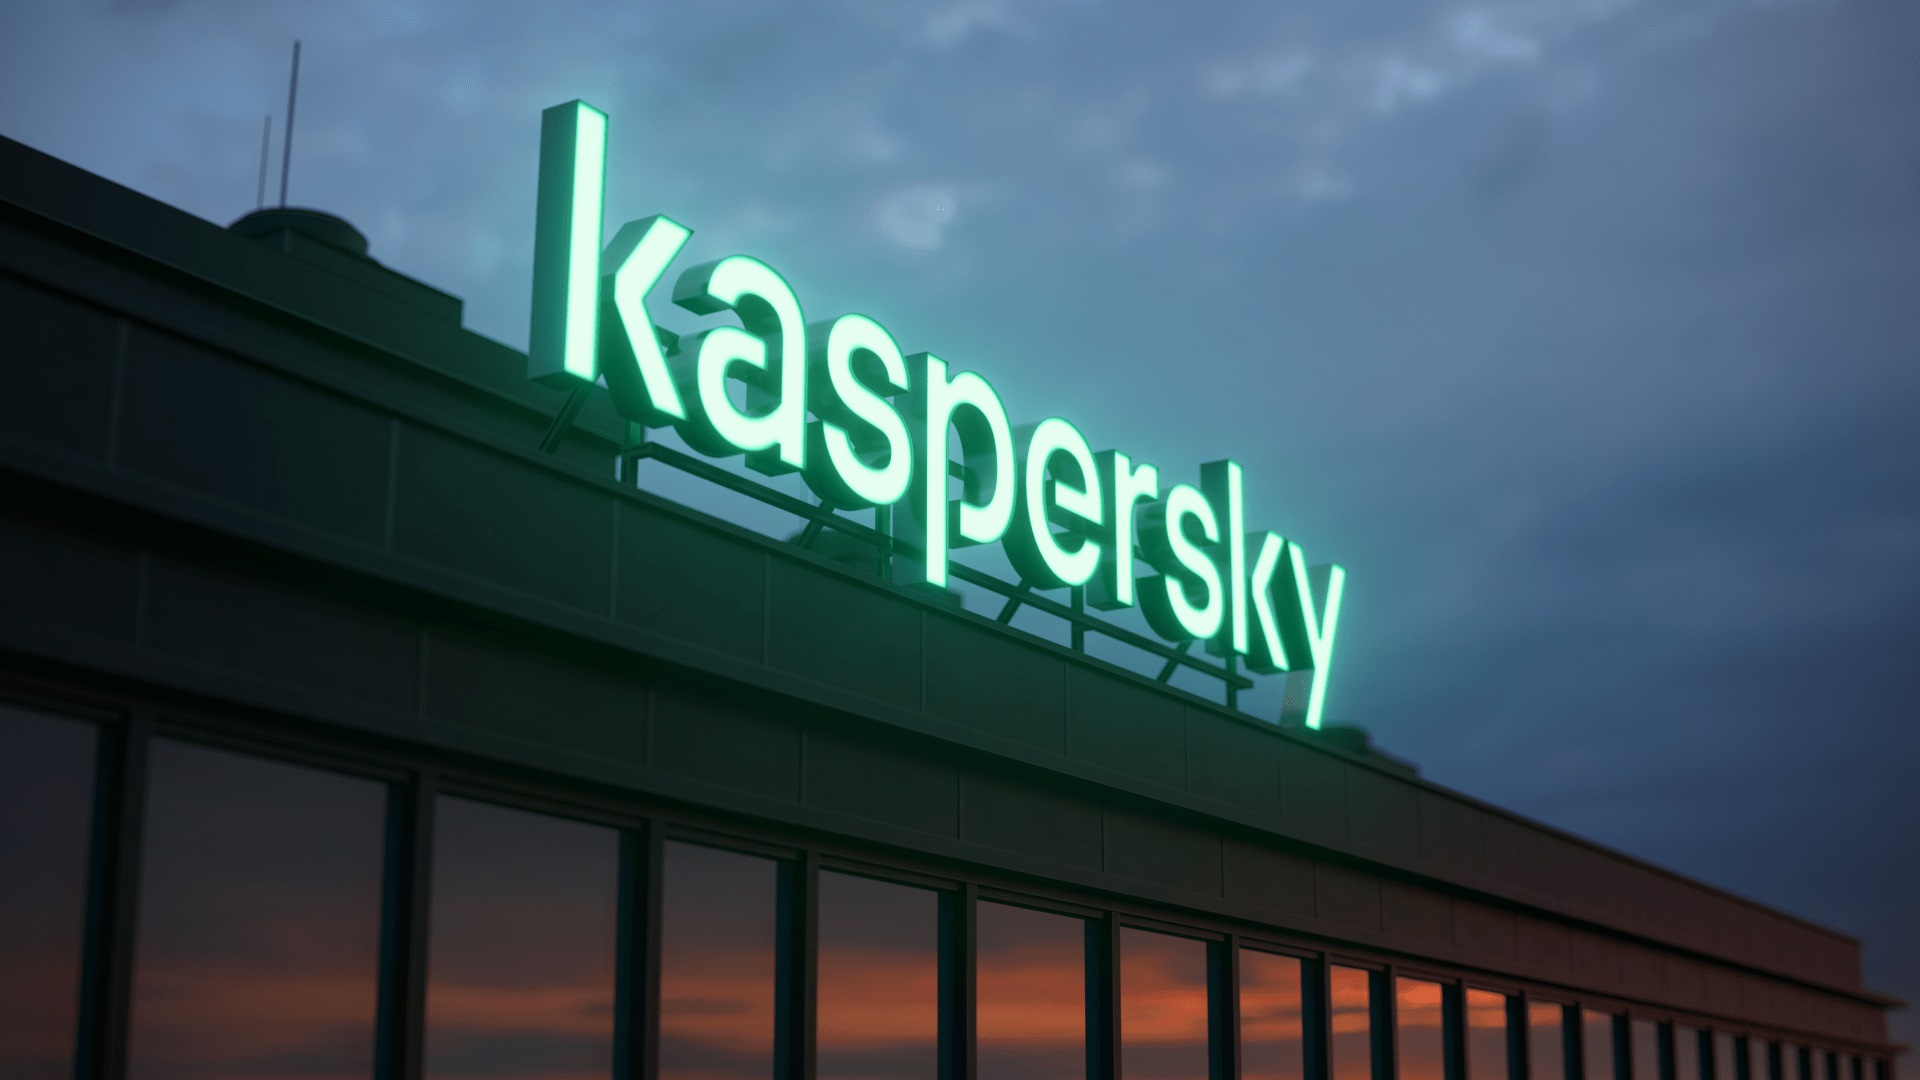 Kaspersky chuyển quá trình xử lý dữ liệu liên quan đến đe doạ mạng của người dùng Mỹ Latinh và Trung Đông sang Thuỵ Sĩ và tái chứng nhận các dịch vụ dữ liệu của mình bởi TÜV AUSTRIA